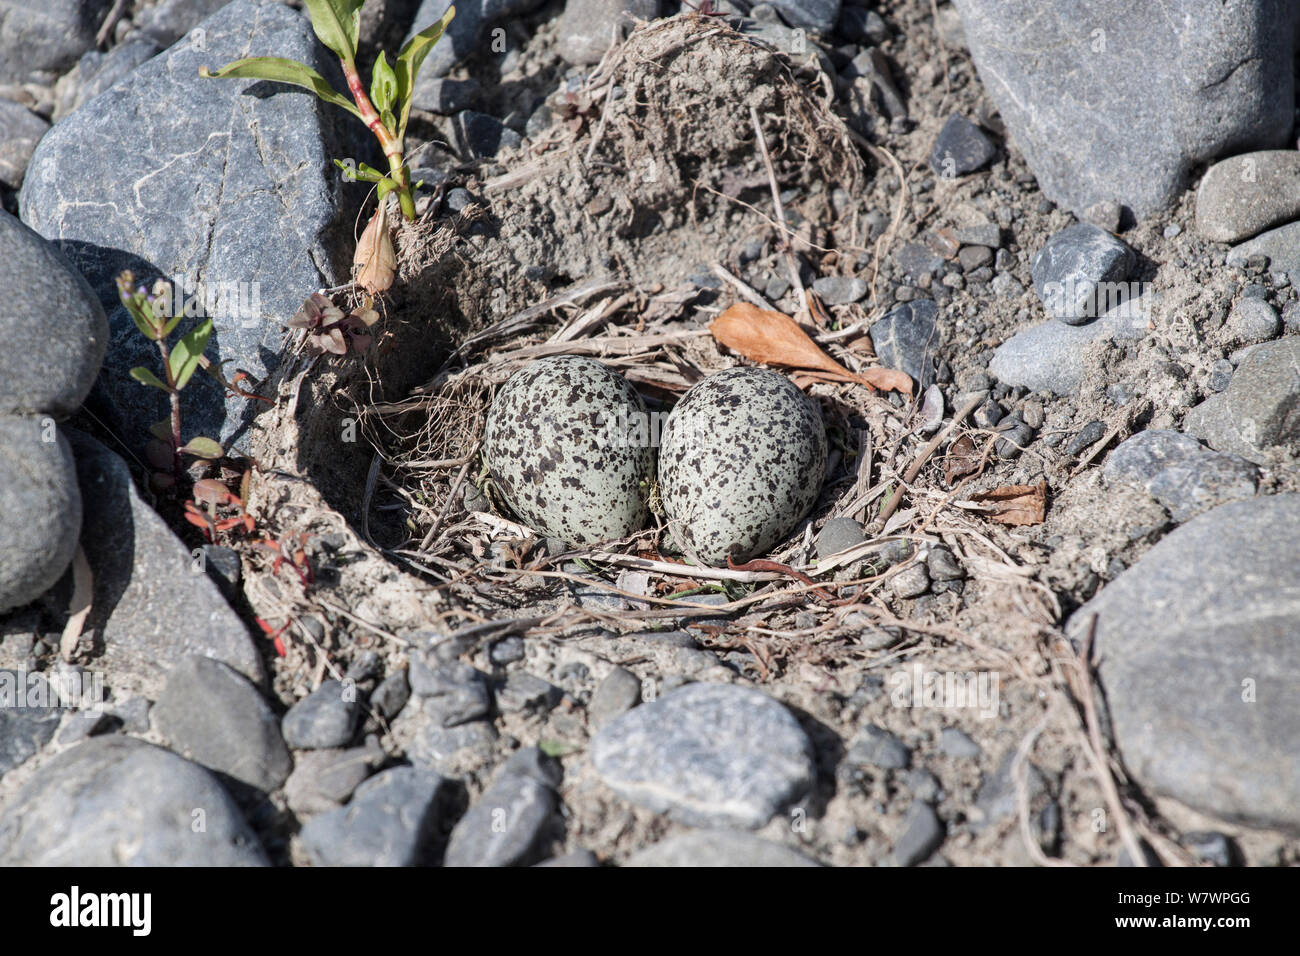 Nastrare dotterel / Double-nastrare plover (Charadrius bicinctus) nido contenente due uova su un filo intrecciato riverbed. Fiume Ngaruroro, Hawkes Bay, Nuova Zelanda, Novembre. Foto Stock